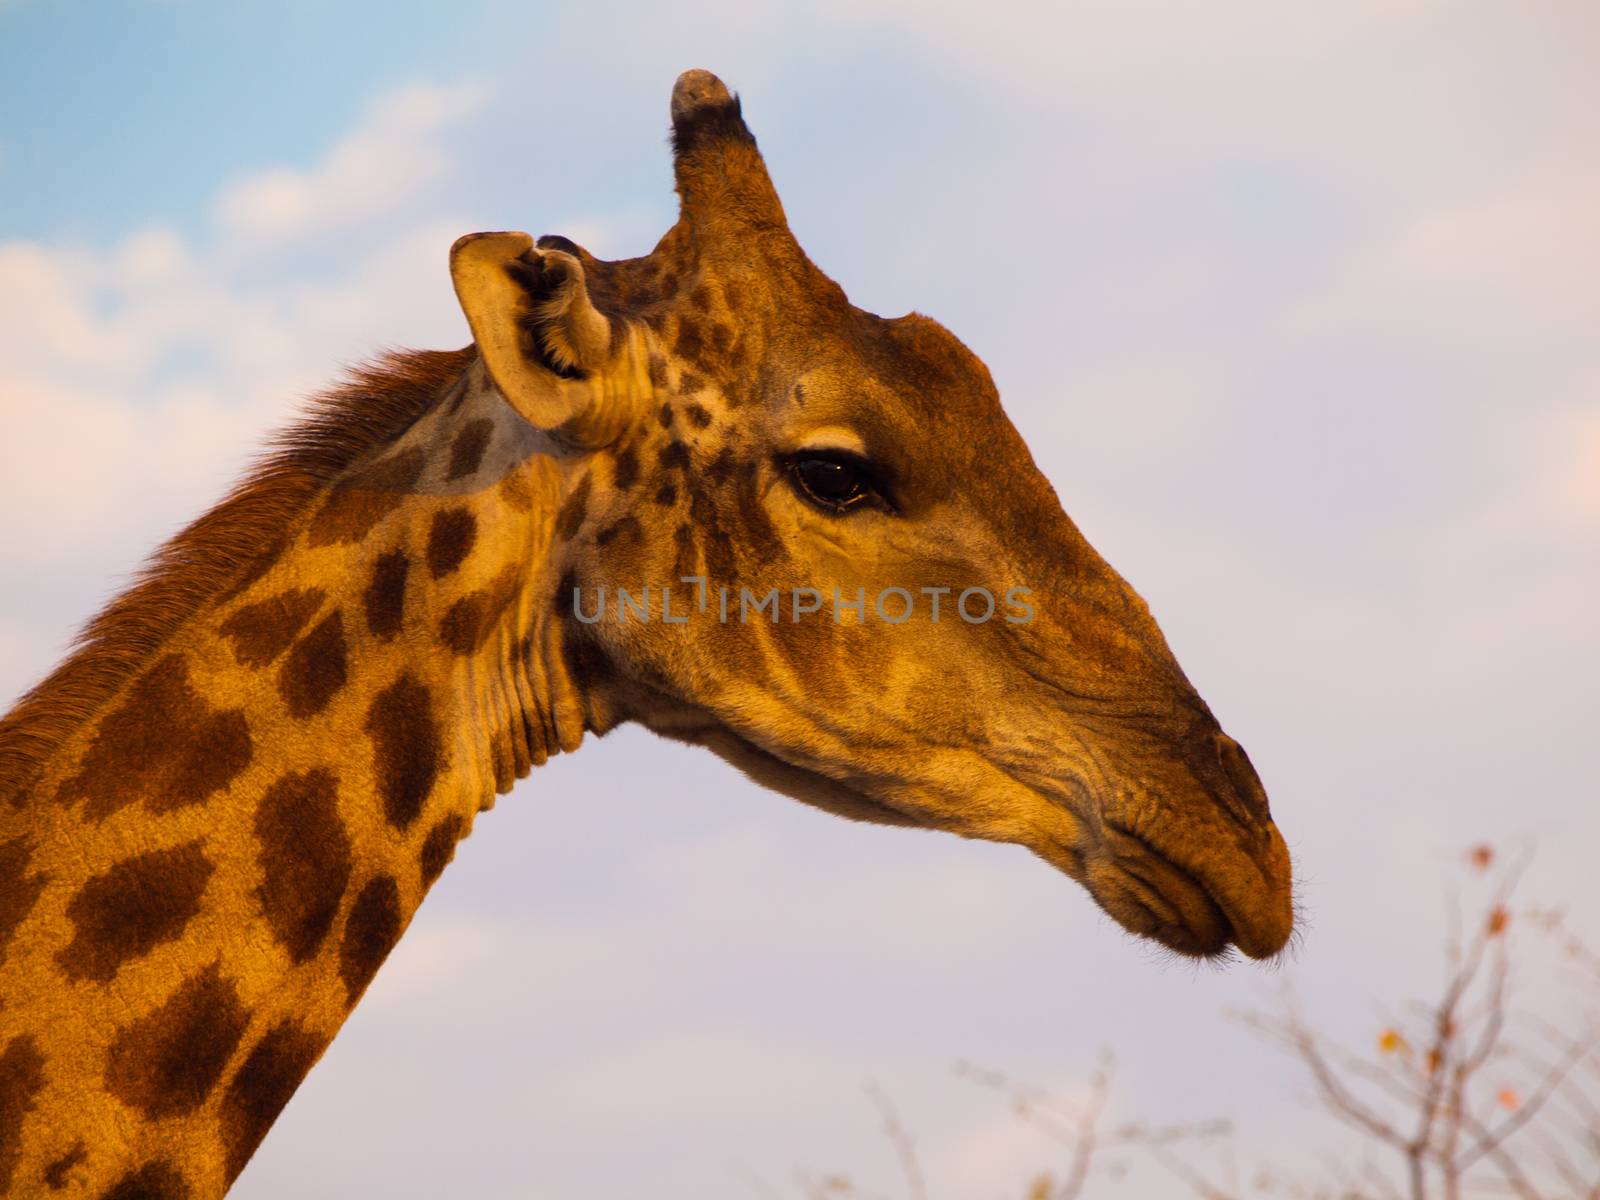 Giraffe portrait on safari wild drive